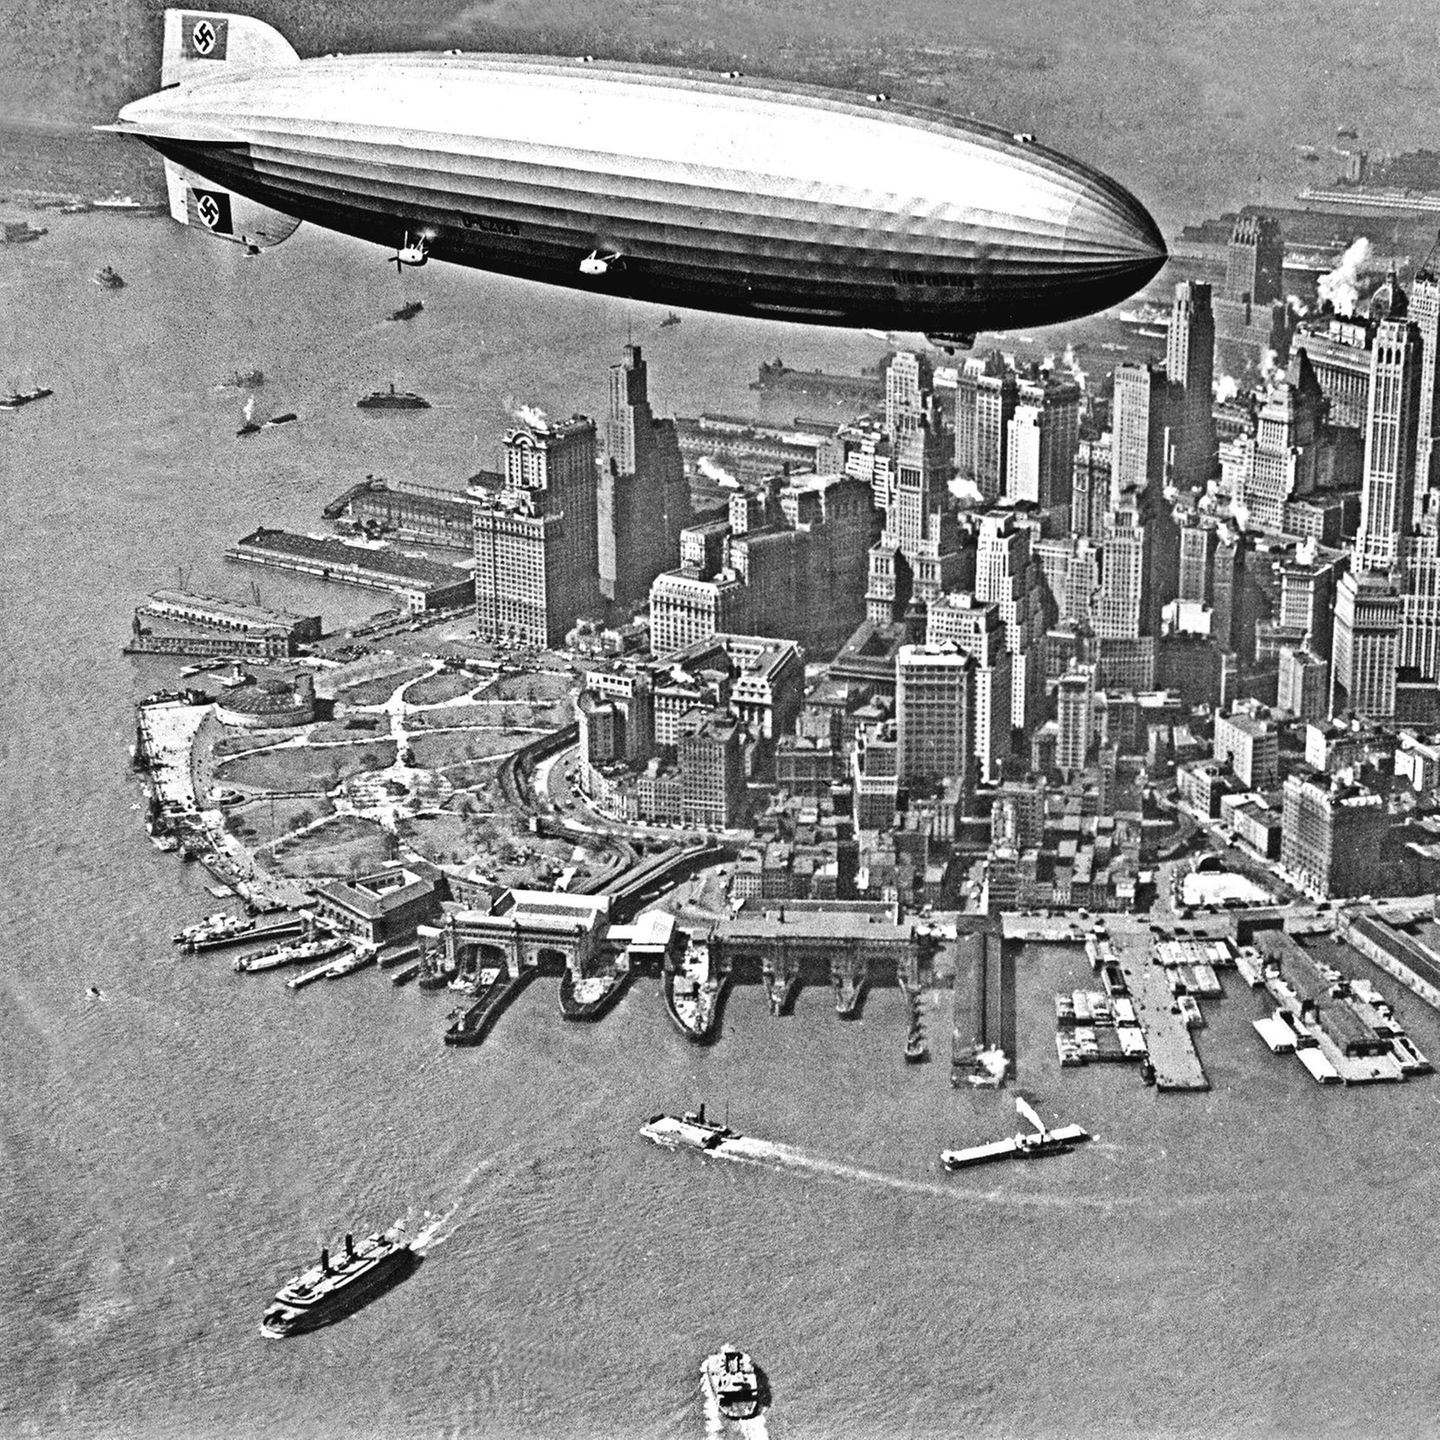 Der Zeppelin "Hindenburg" fliegt über Manhatten, NYC